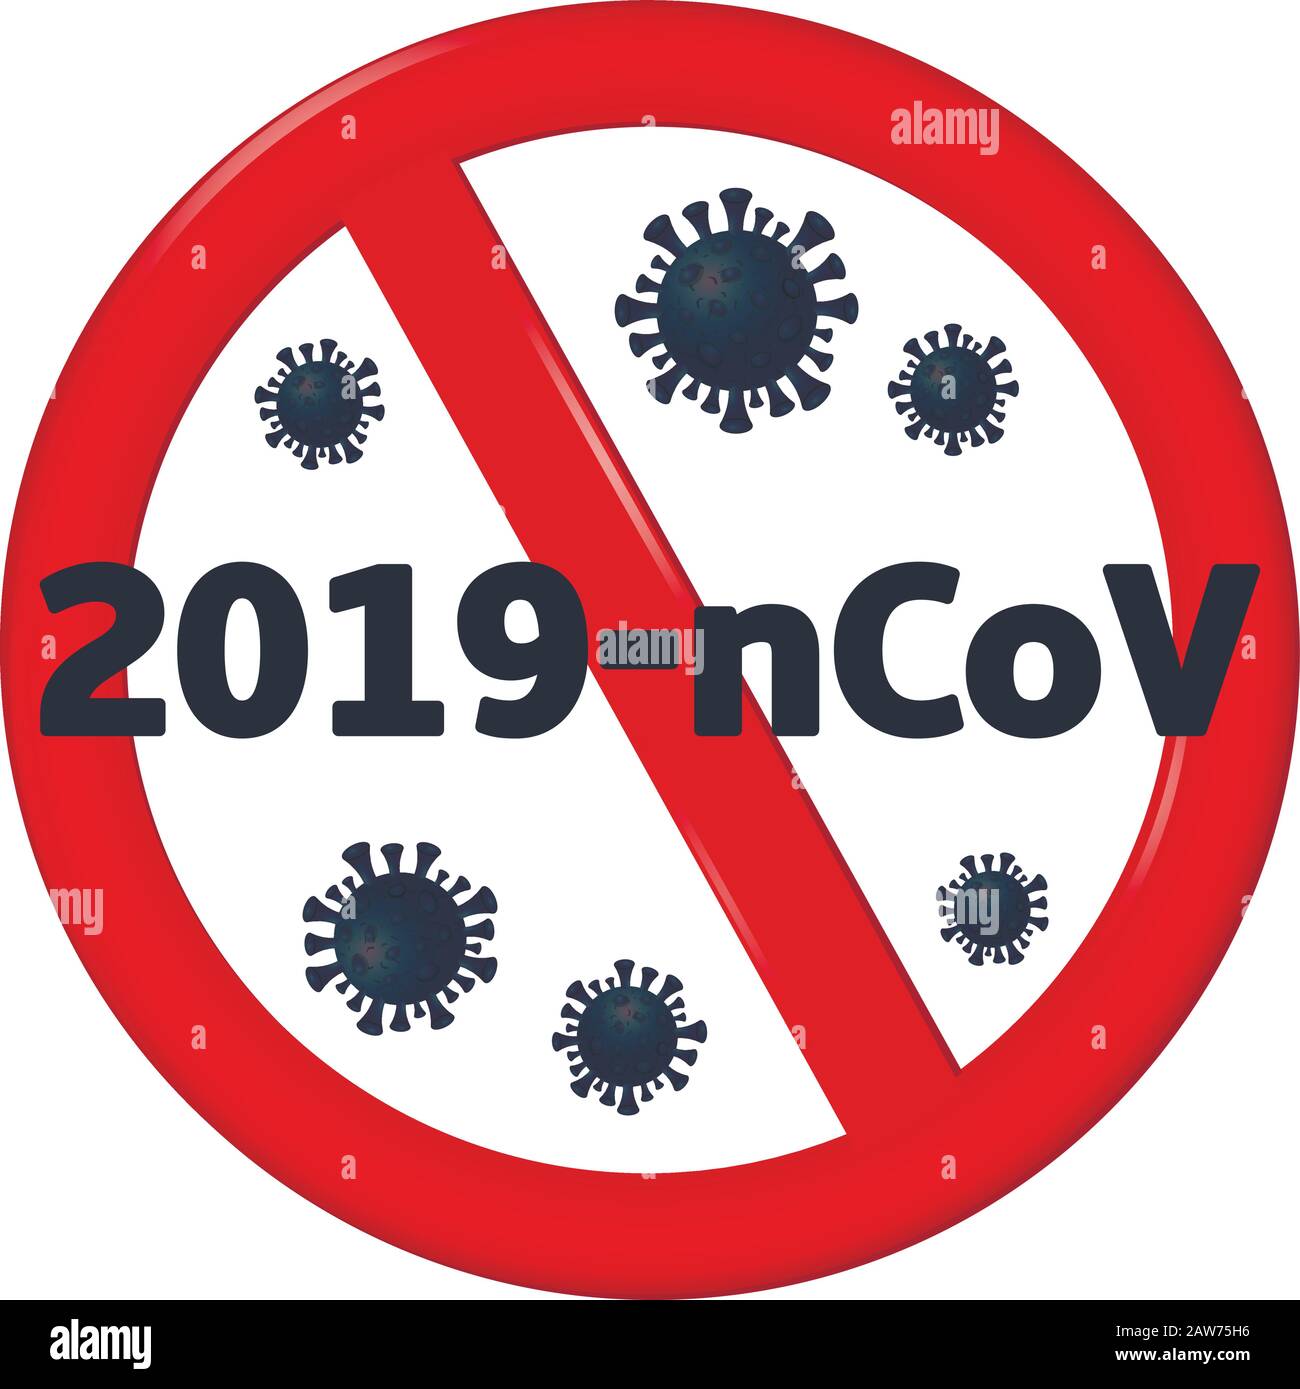 Beenden Sie Coronavirus. Coronavirus 2019-nCoV ist mit rotem STOPPSCHILD durchgestrichen Stock Vektor